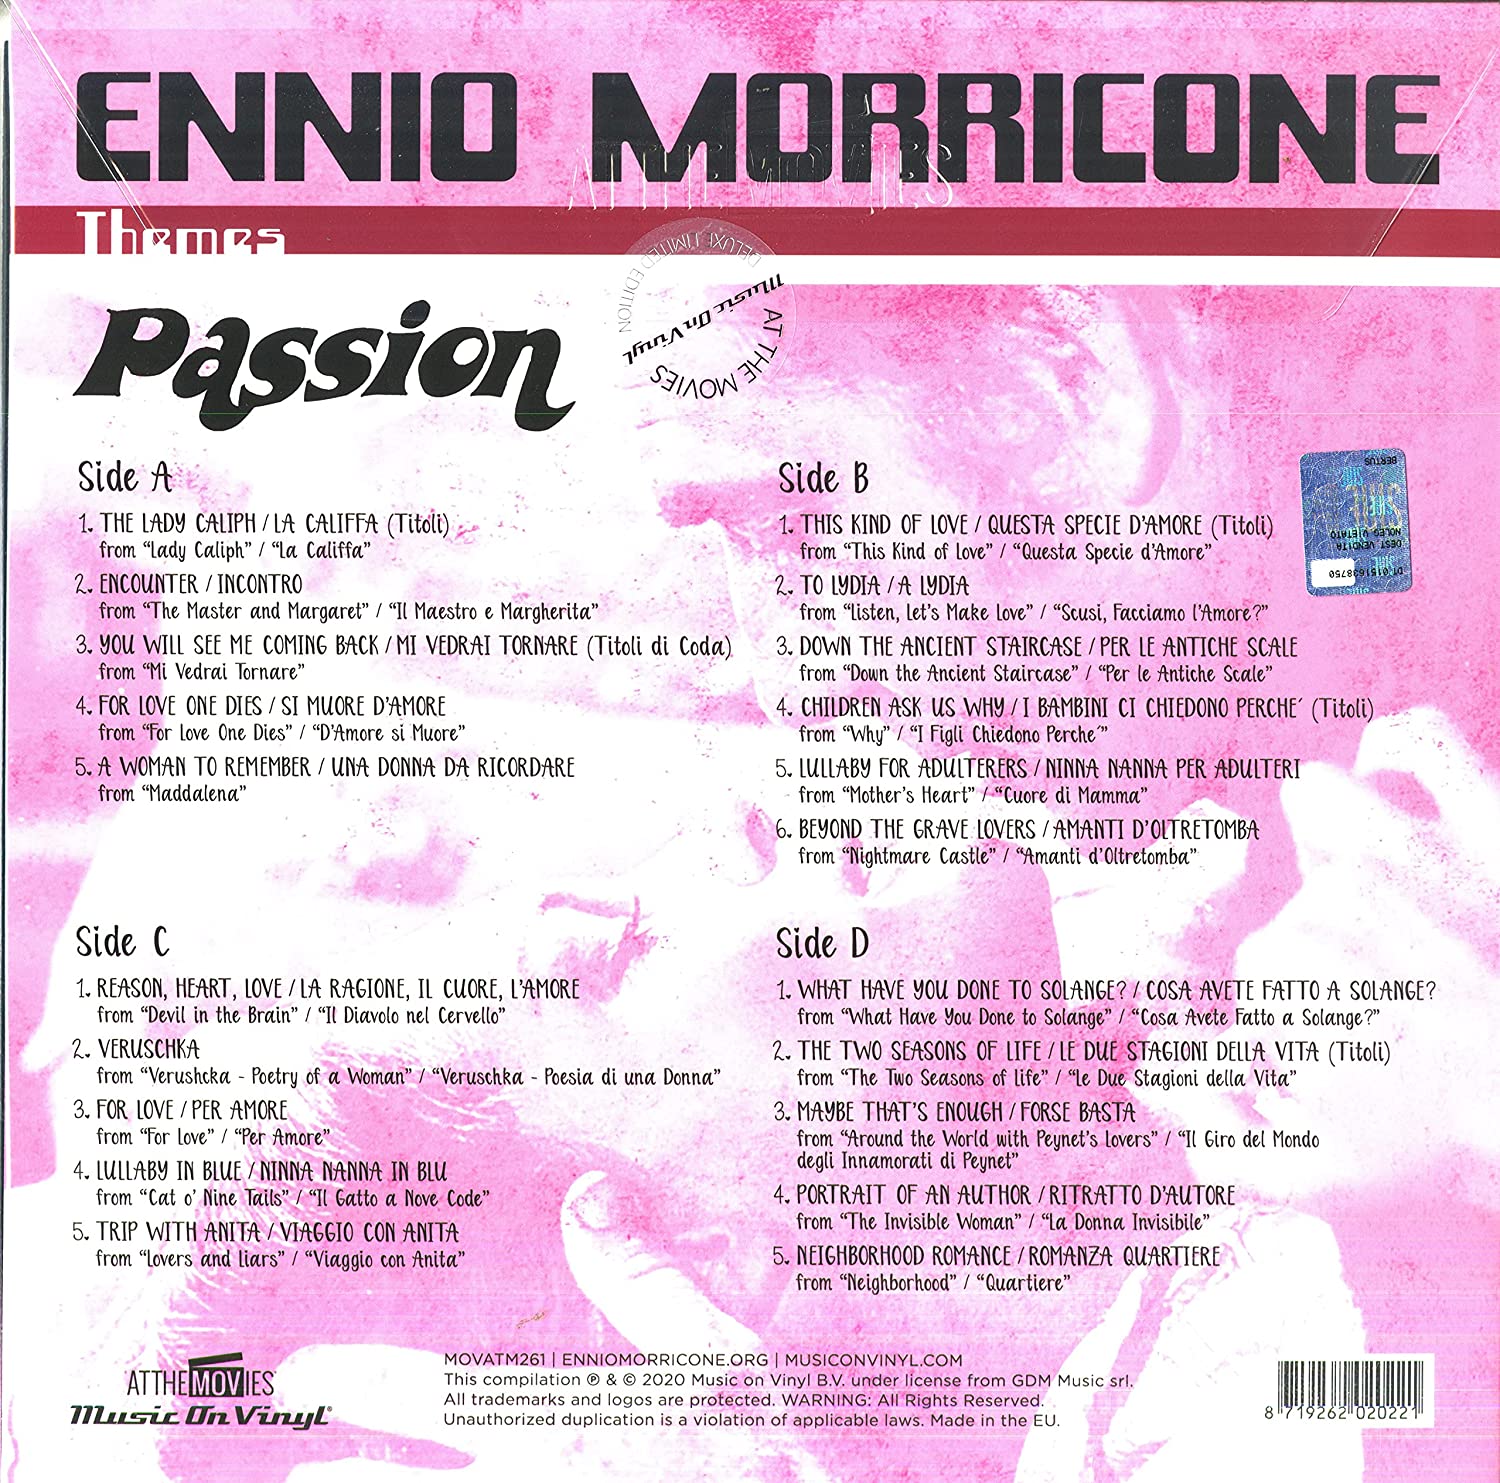 패션, 위험한 열정 영화음악 (Passion OST by Ennio Morricone) [2LP] 